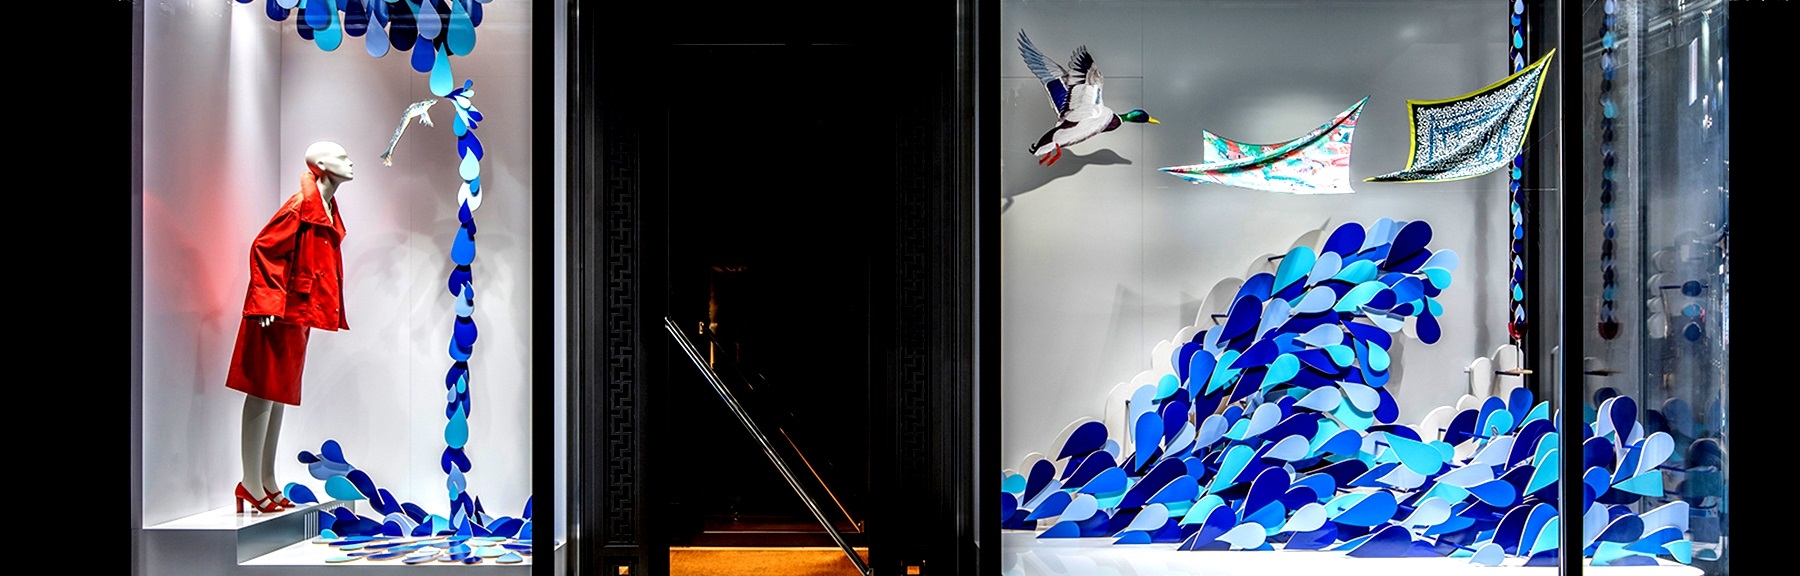 Hermès windows by Isabelle Daëron, Tokyo